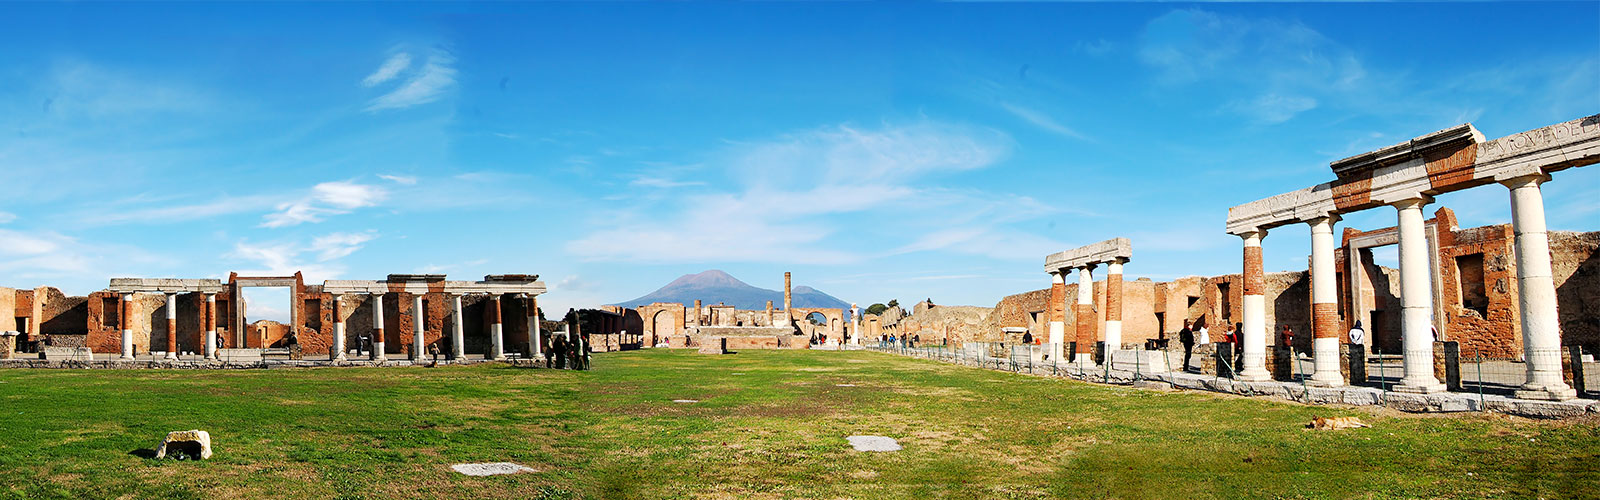 Le ricerche a Pompei: riflessioni e aggiornamenti